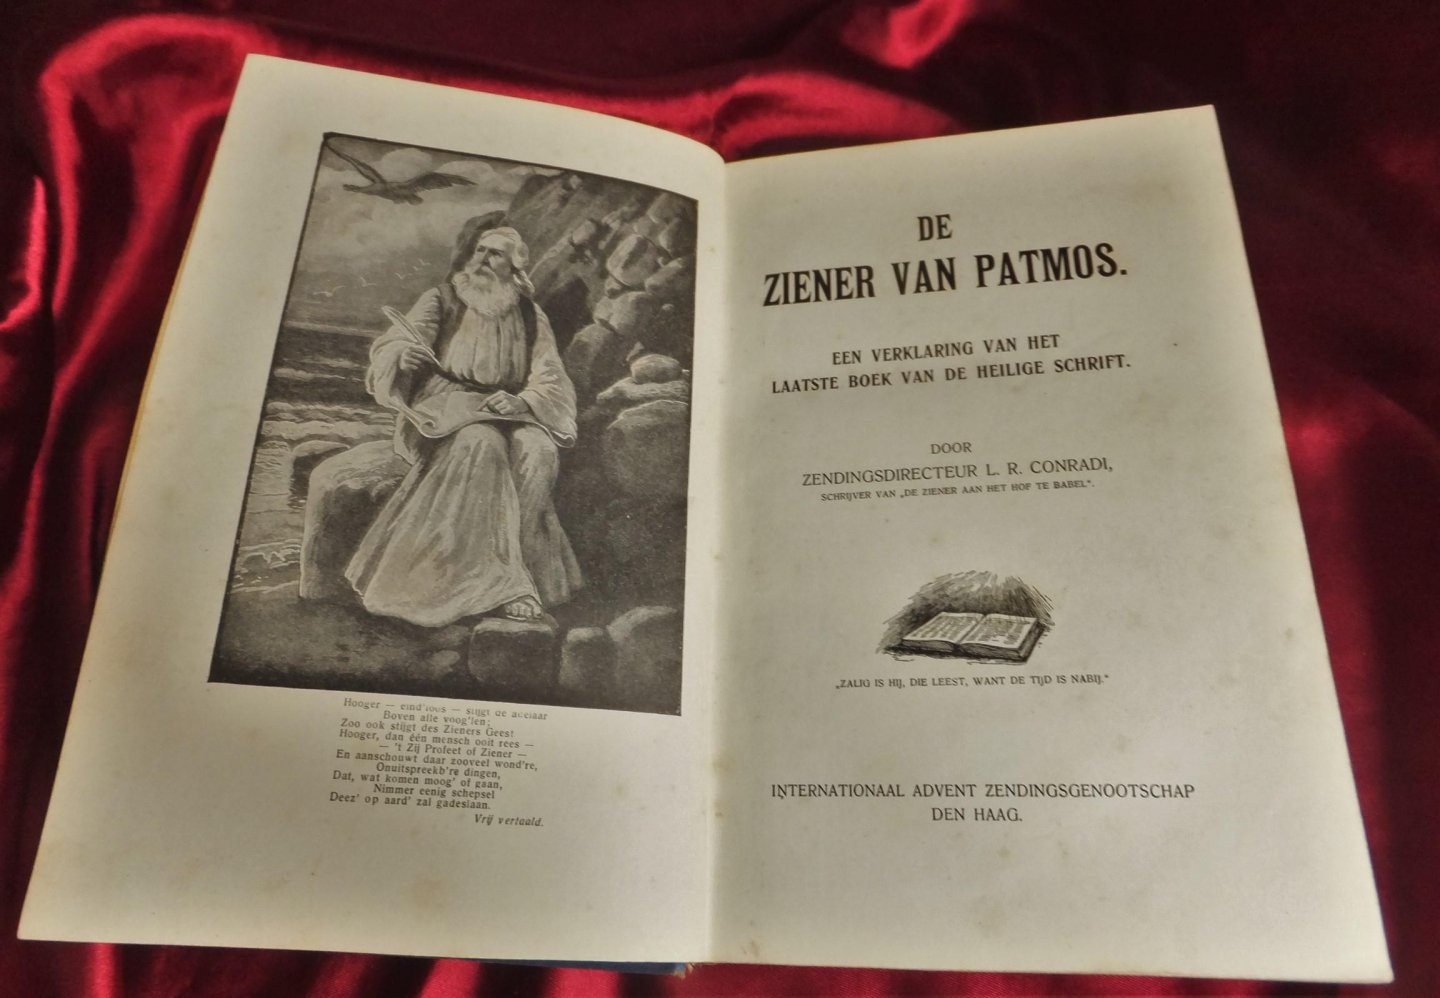 Conradi, L.R. - De ziener van Patmos. Een verklaring van het laatste boek van de Heilige Schrift